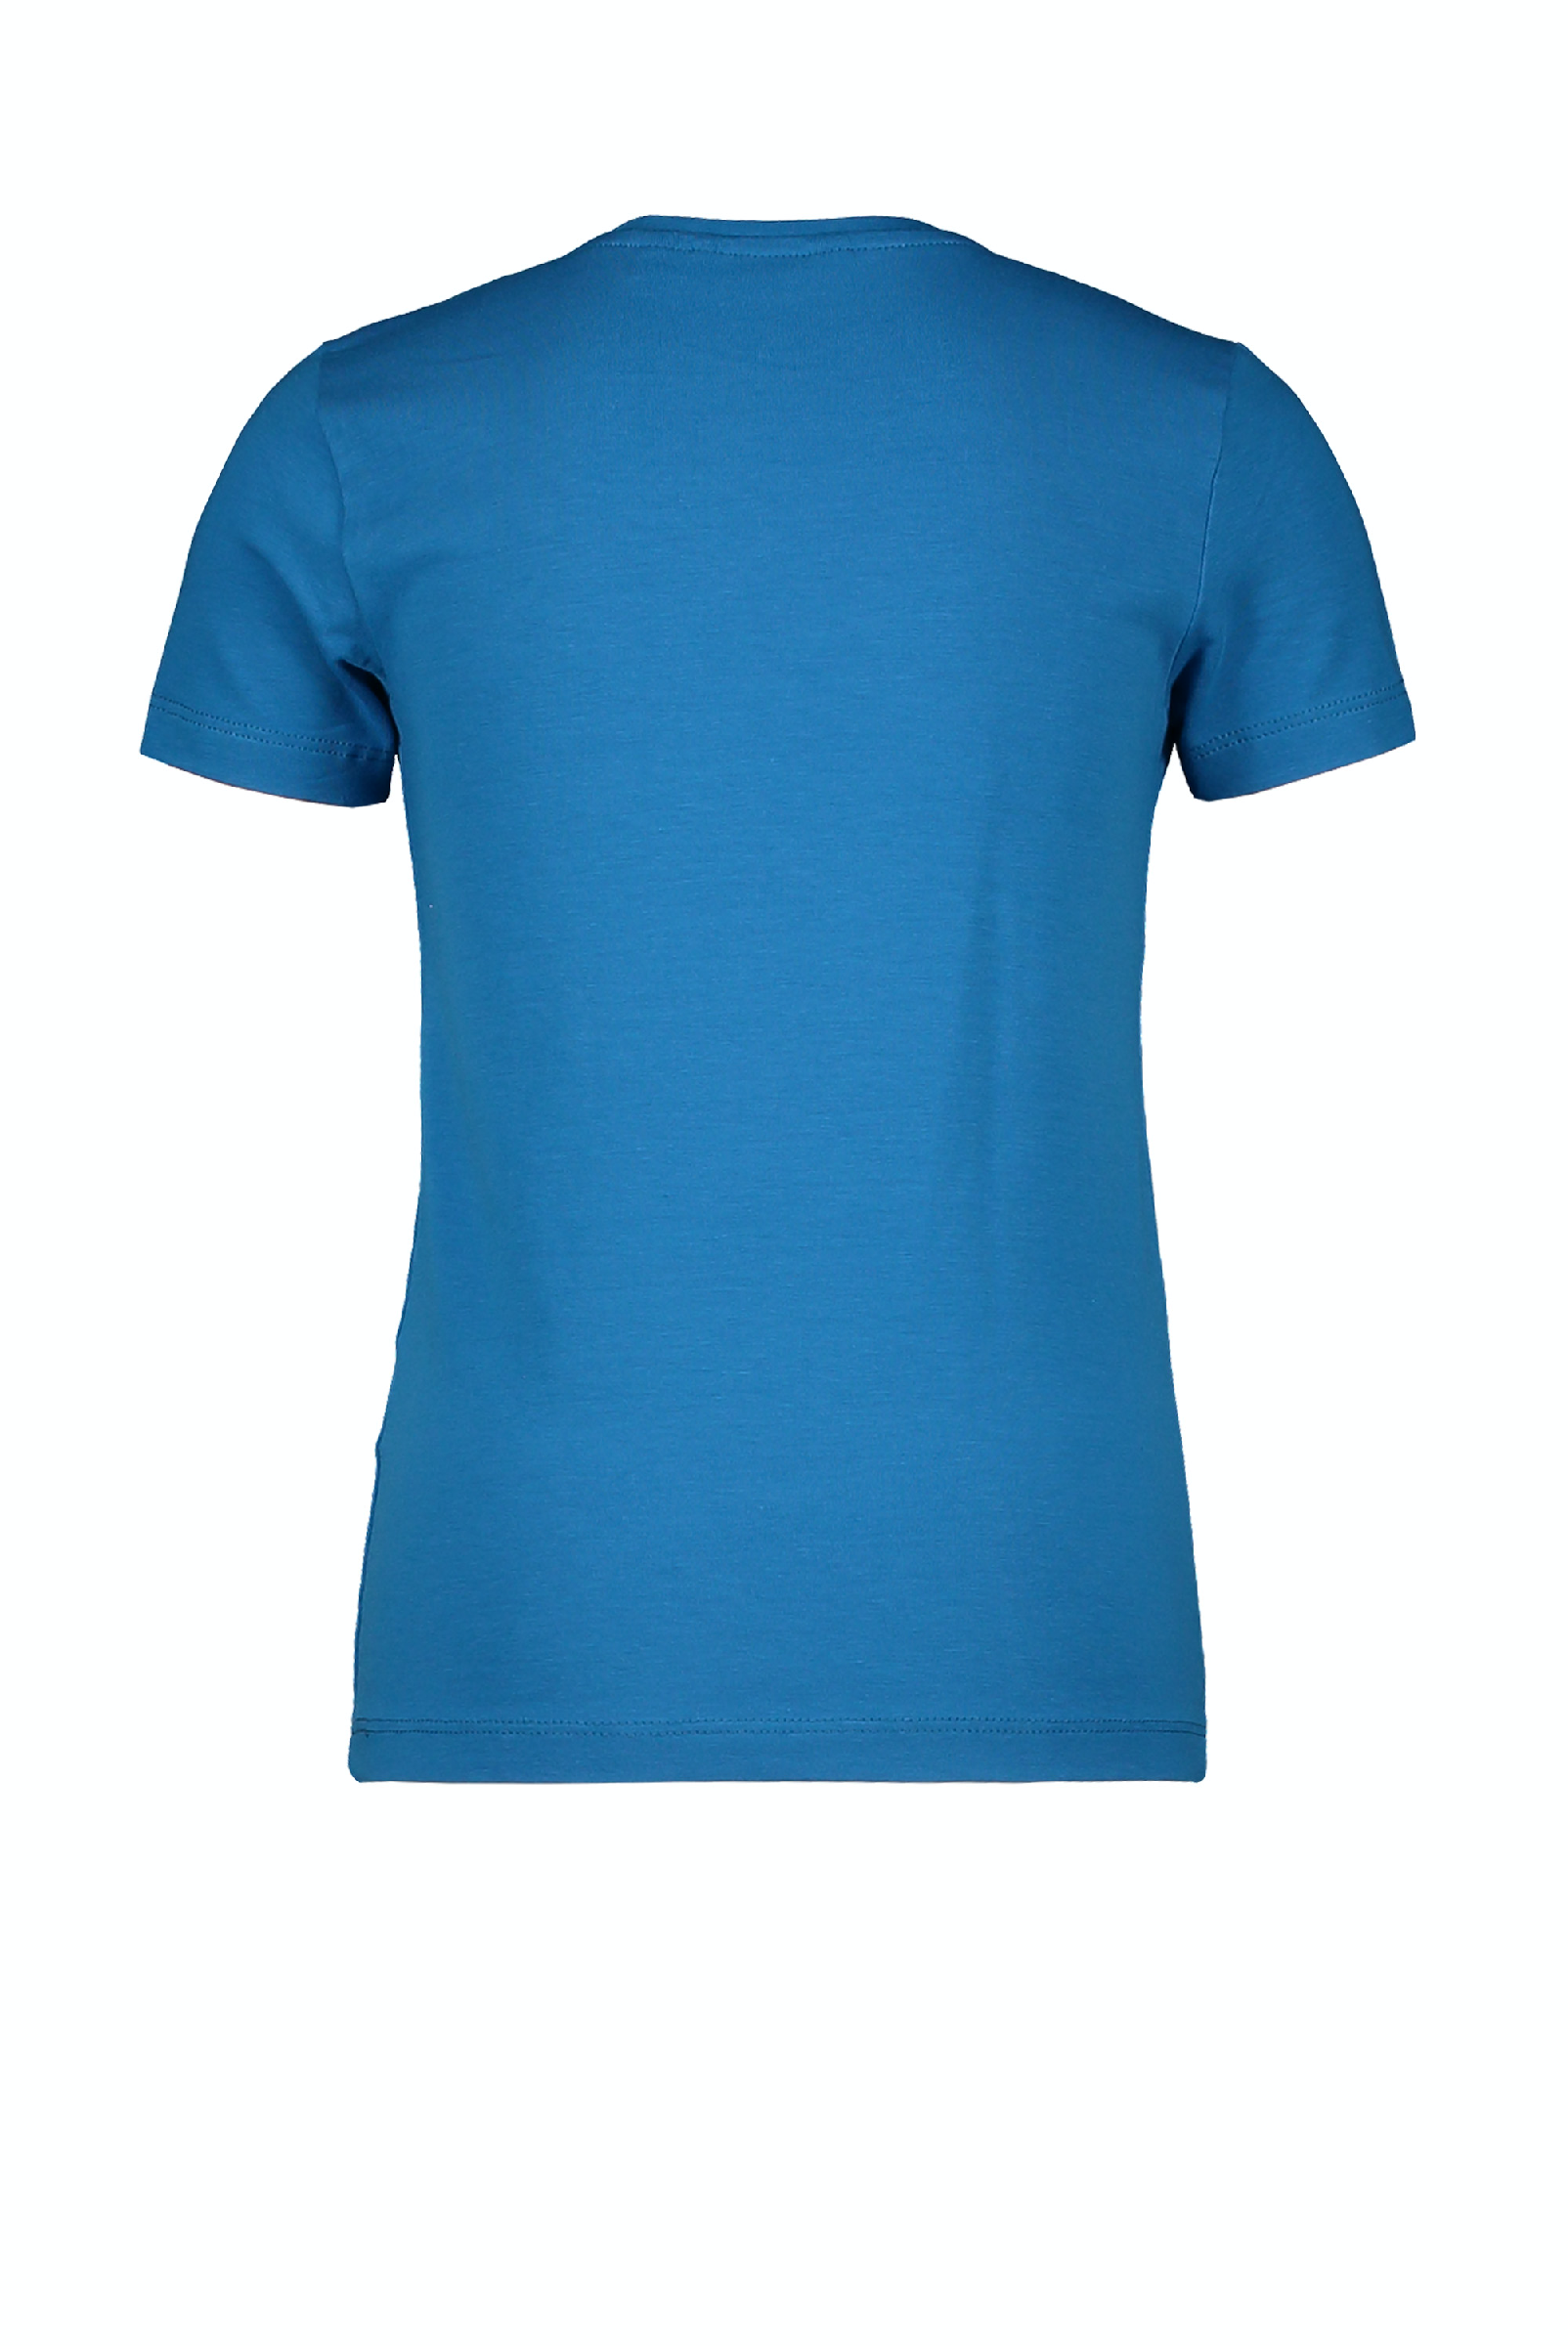 Meisjes MT t-shirt chestprint van Moodstreet in de kleur Blue in maat 134, 140.